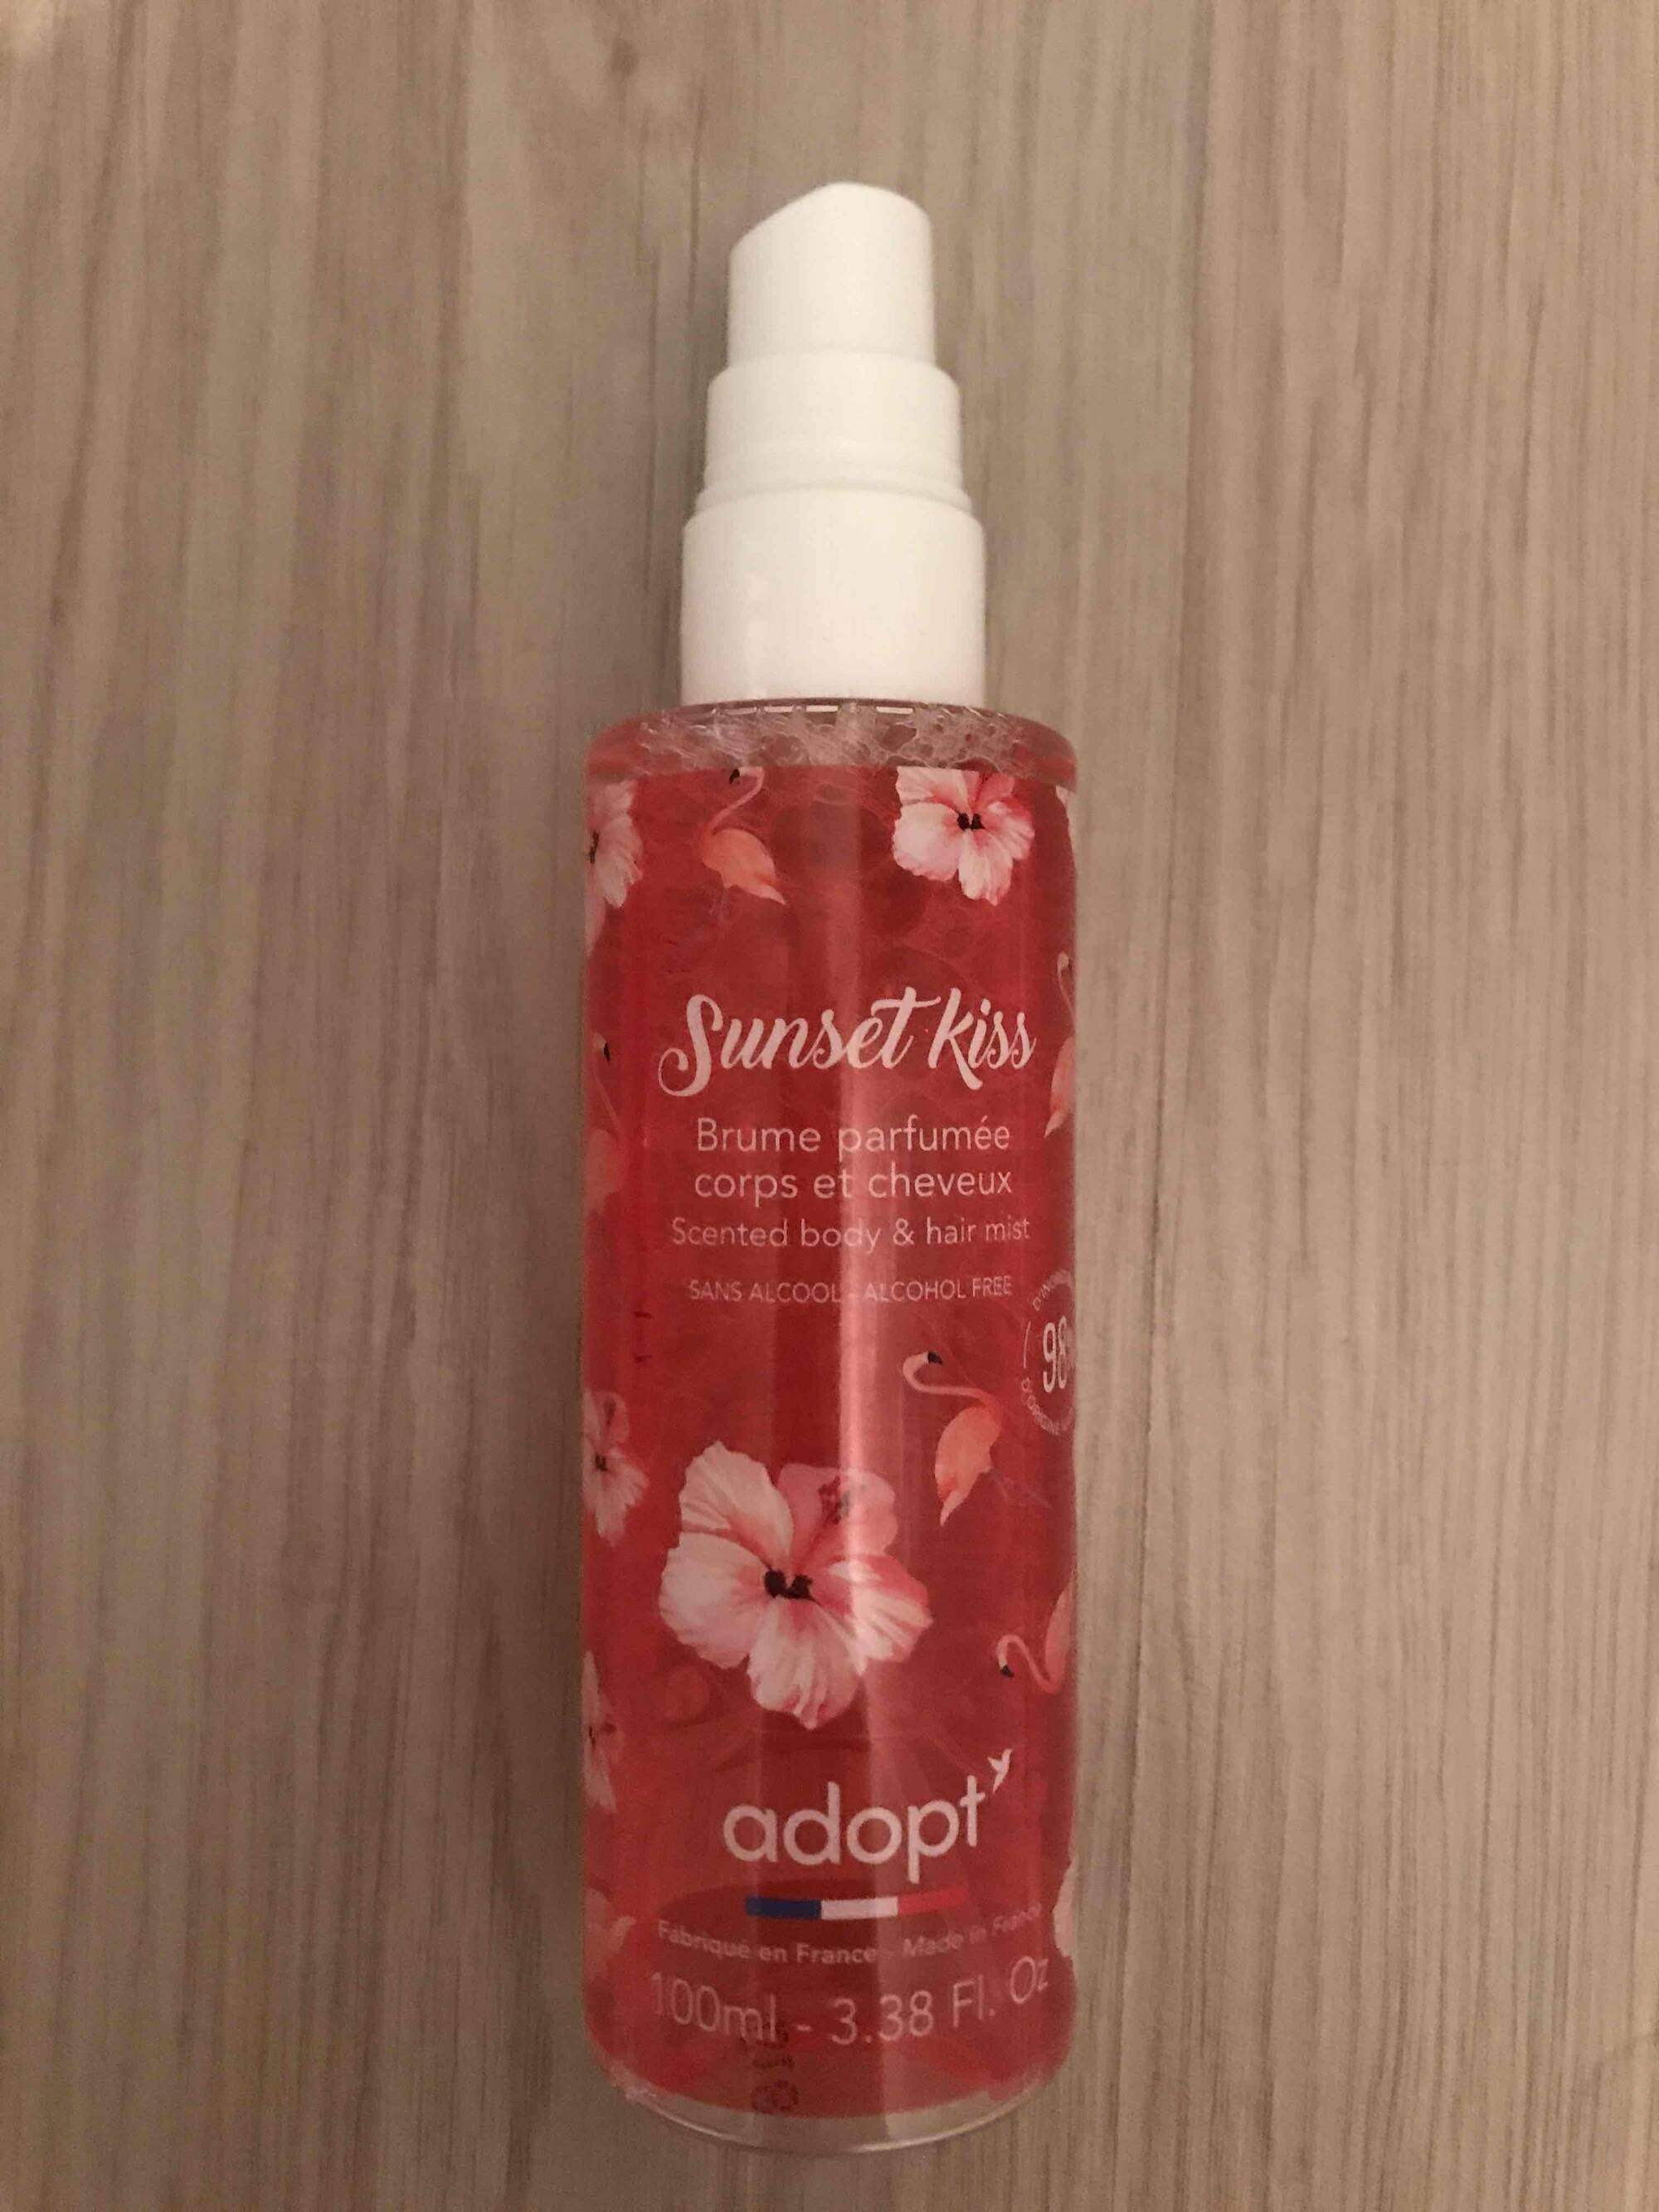 ADOPT' - Sunset Kiss brume parfumée corps et cheveux